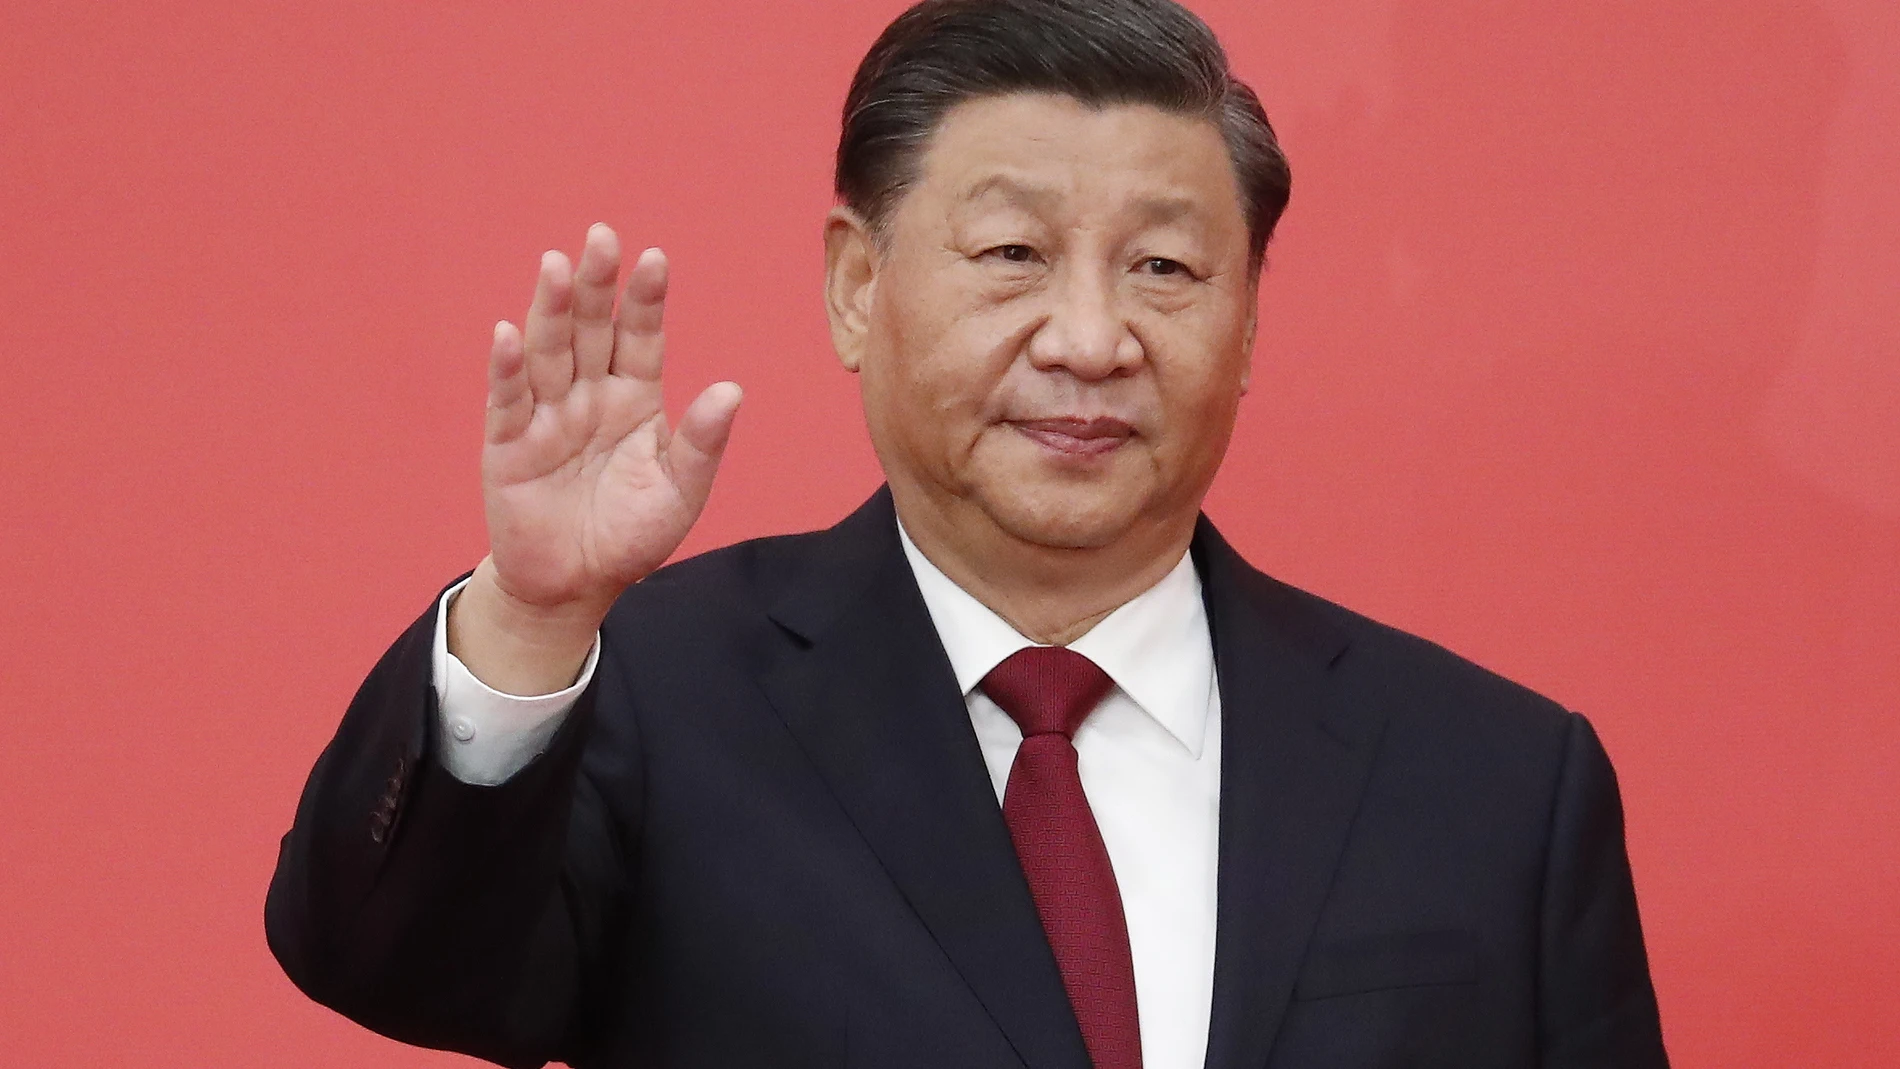 China da poder ilimitado para Xi Jinping, el líder más autoritario desde Mao